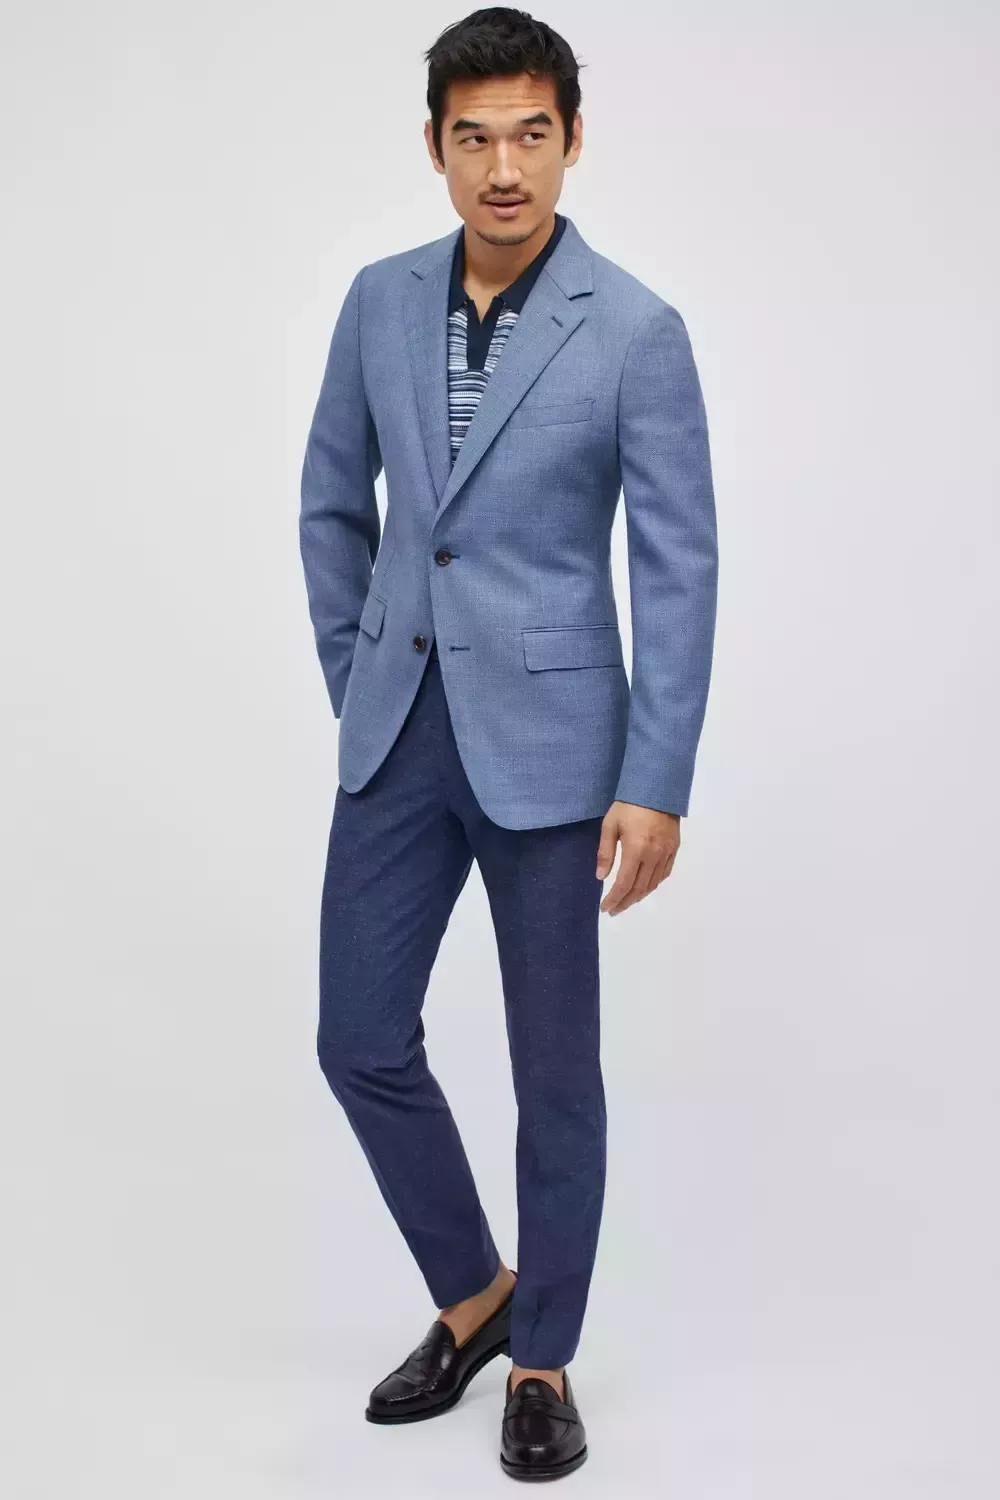 Separaciones de trajes: 8 combinaciones de colores de blazer y pantalón que todos los hombres deberían conocer